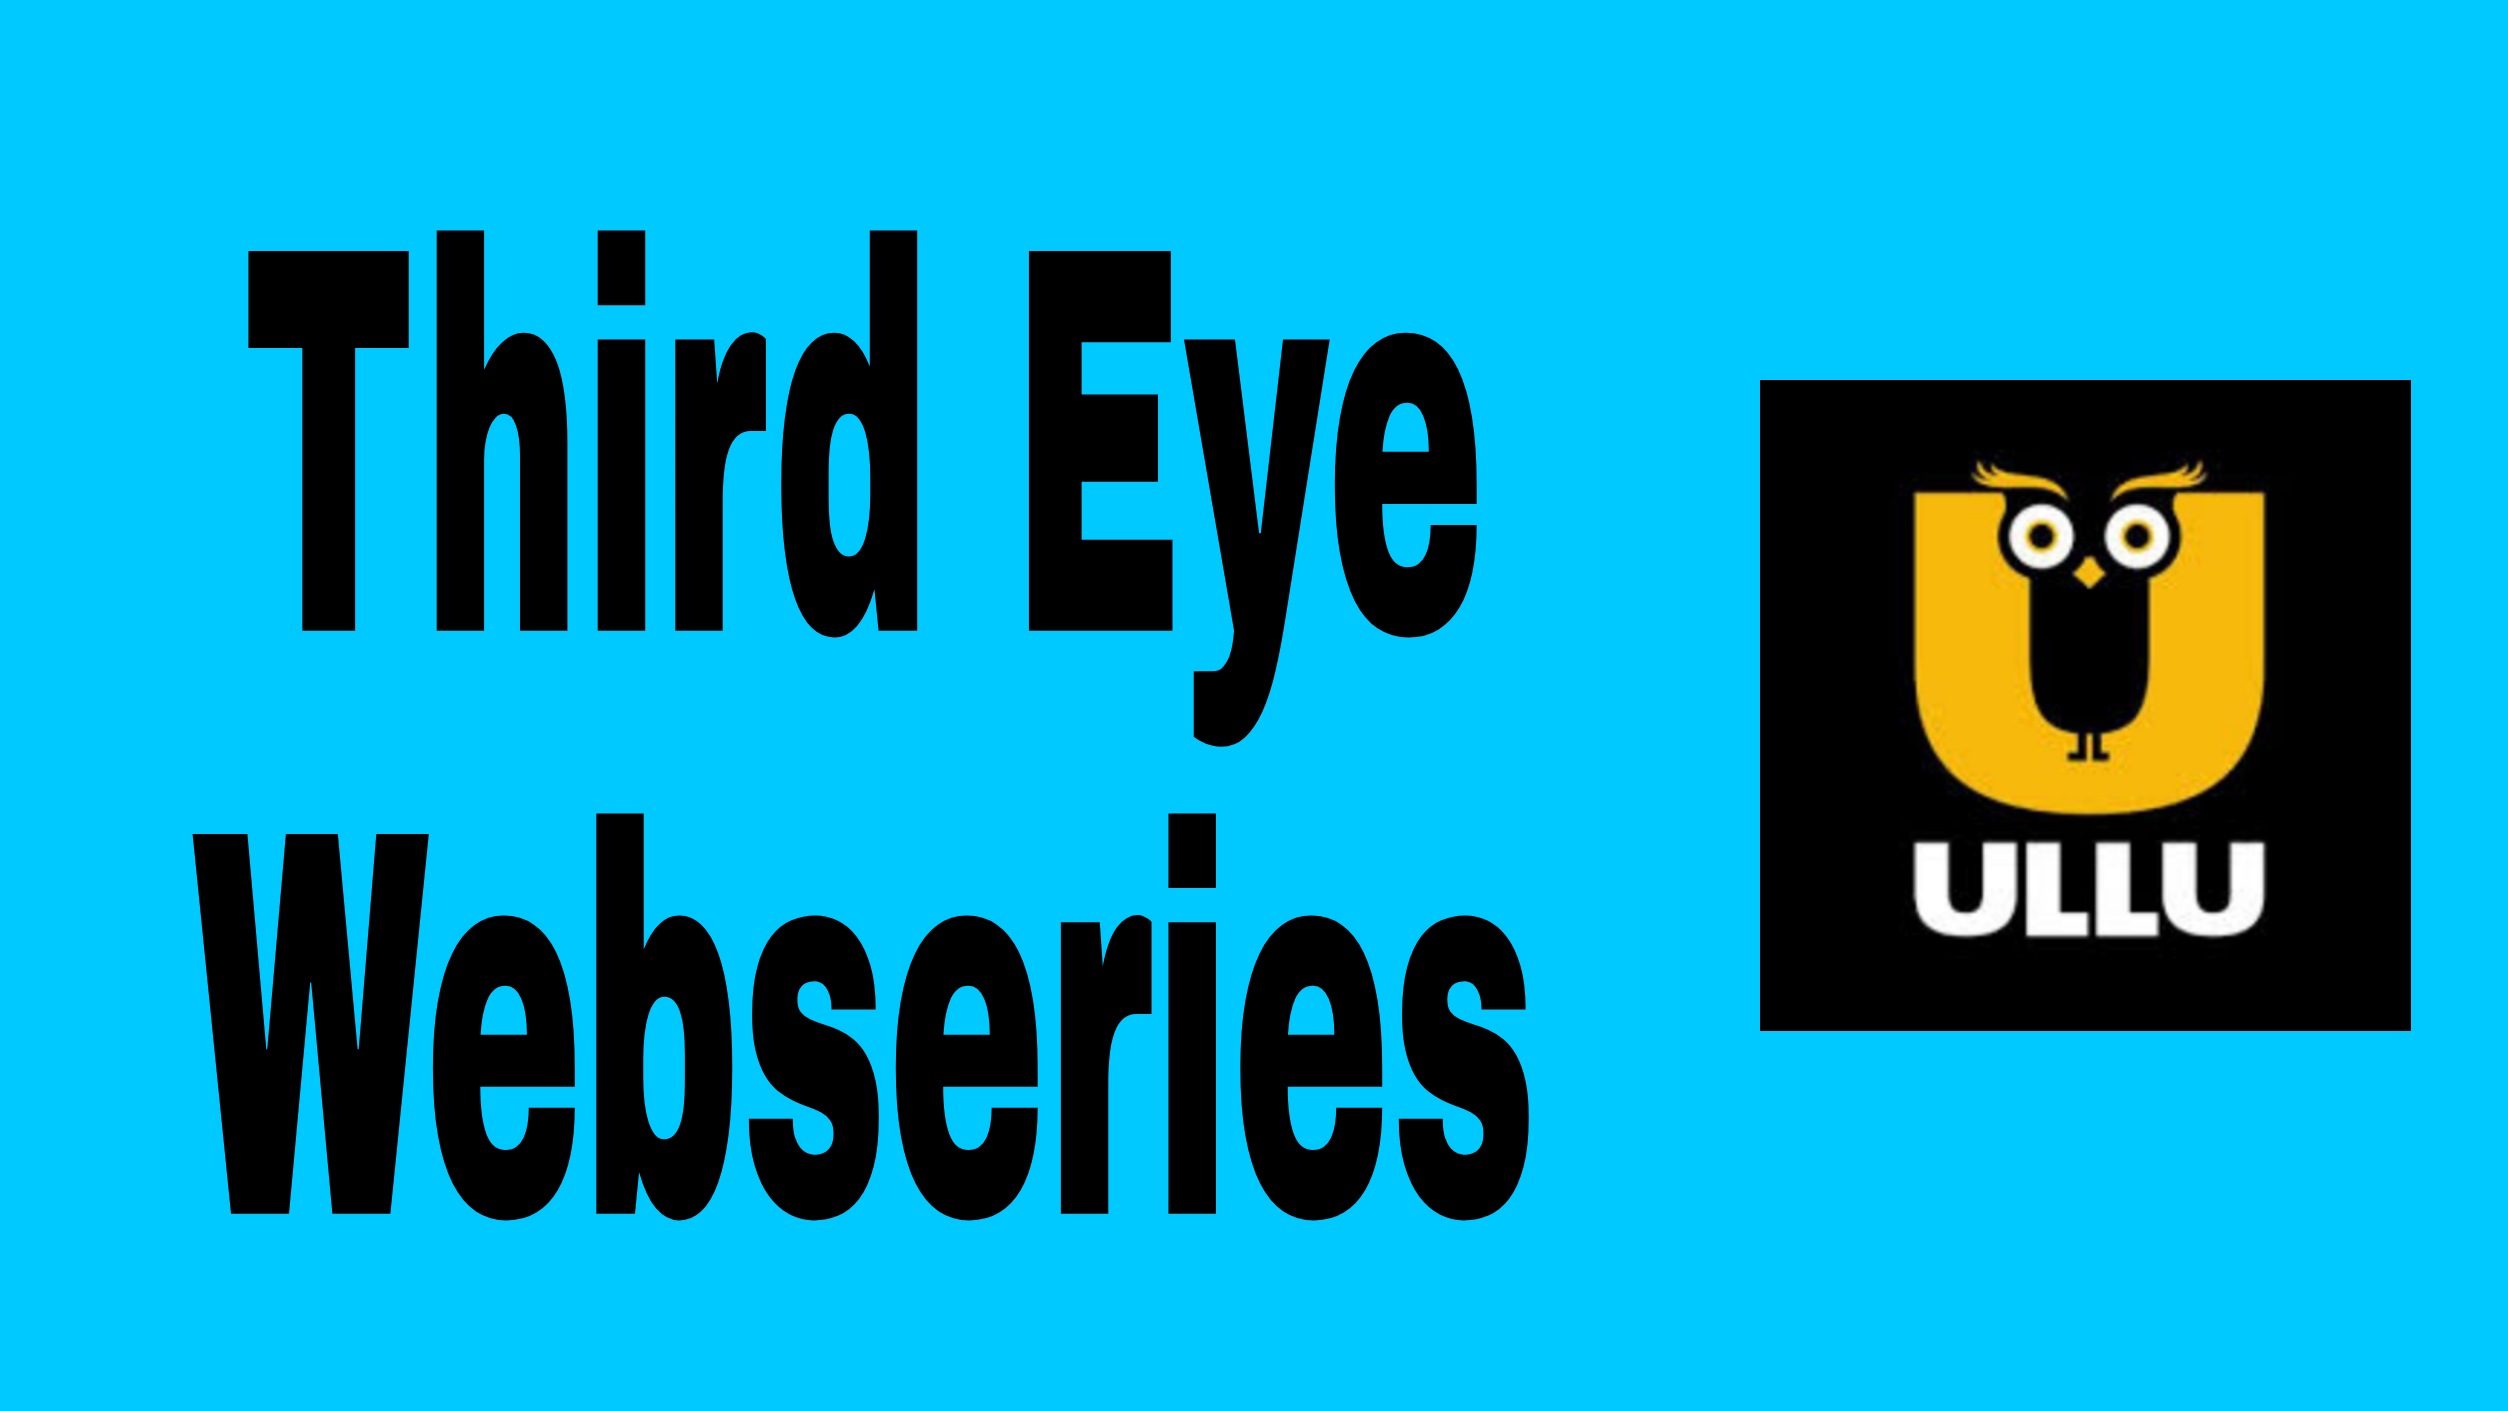 Third Eye Webseries